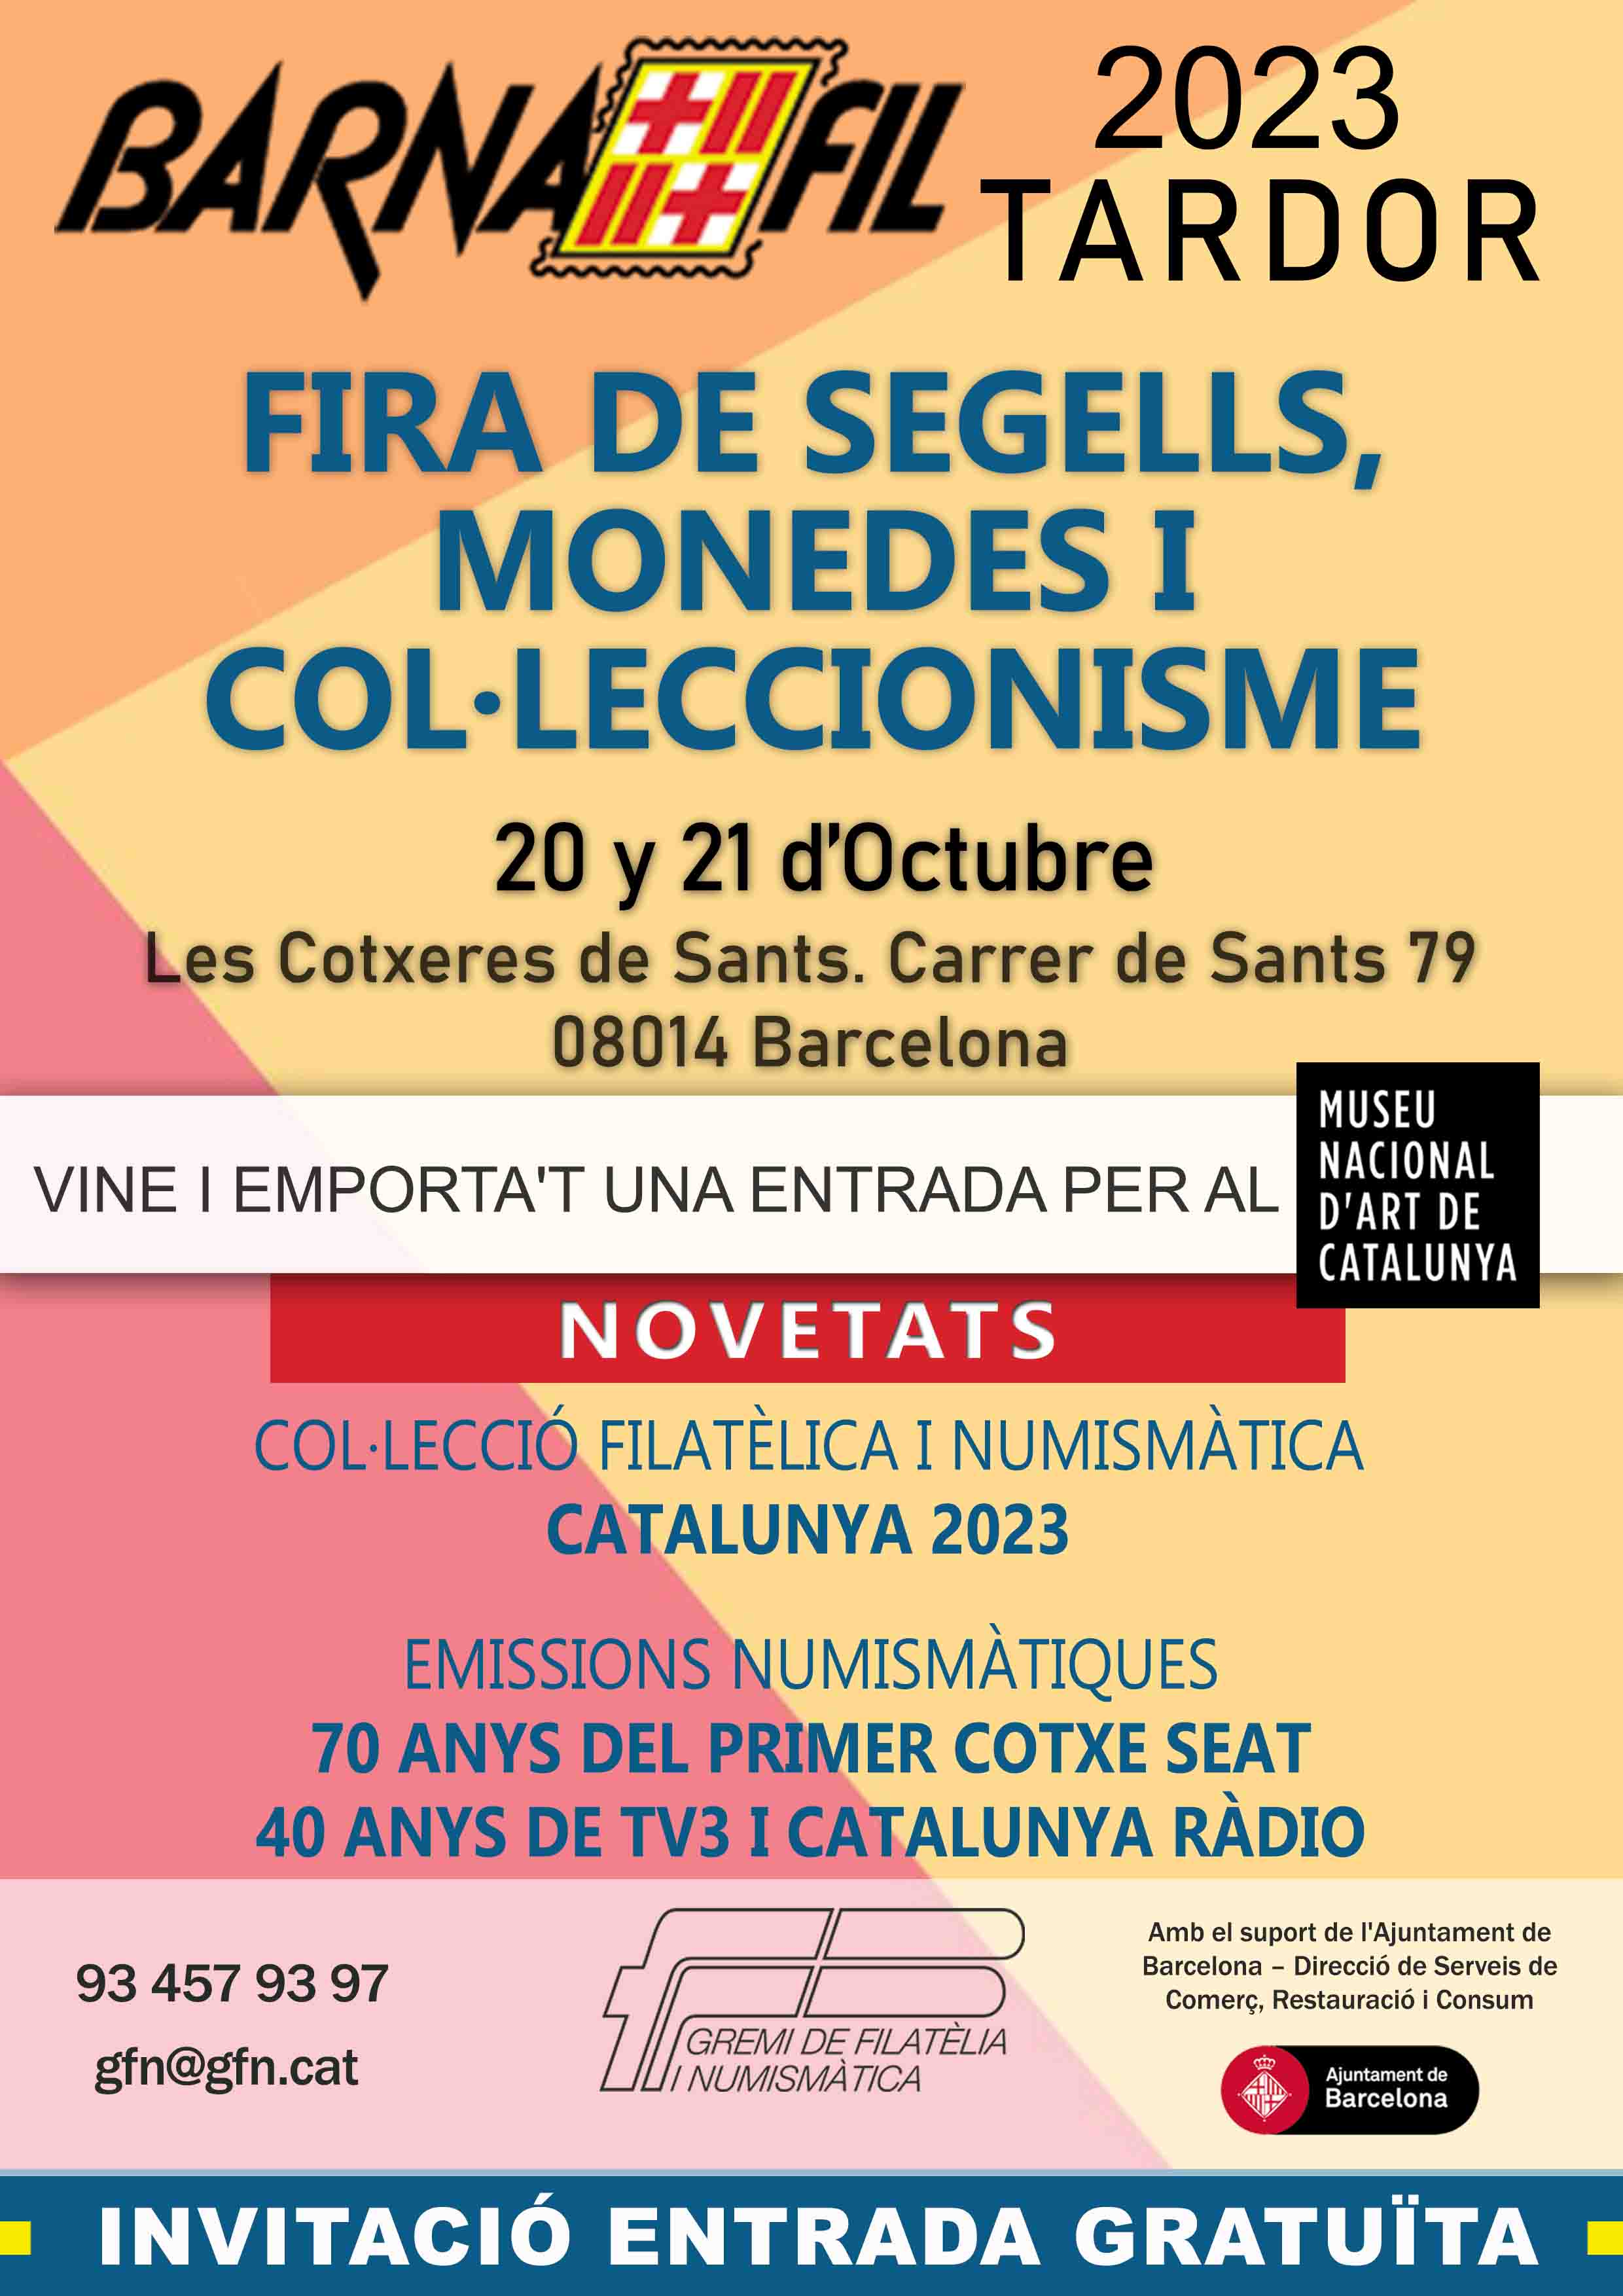 xerrada-conferencia divendres 20 octubre a les 18:00 h.: LES EMISSIONS MONETARIES D'EMERGENCIA A LA GUERRA CIVIL ESPANYOLA: NECESSITAT, OPORTUNITAT I FRAU - a càrrec del Dr. Albert Estrada-Rius, Conservador en Cap del Gabinet Numismàtic de Catalunya - Museu Nacional d'Art de Catalunya